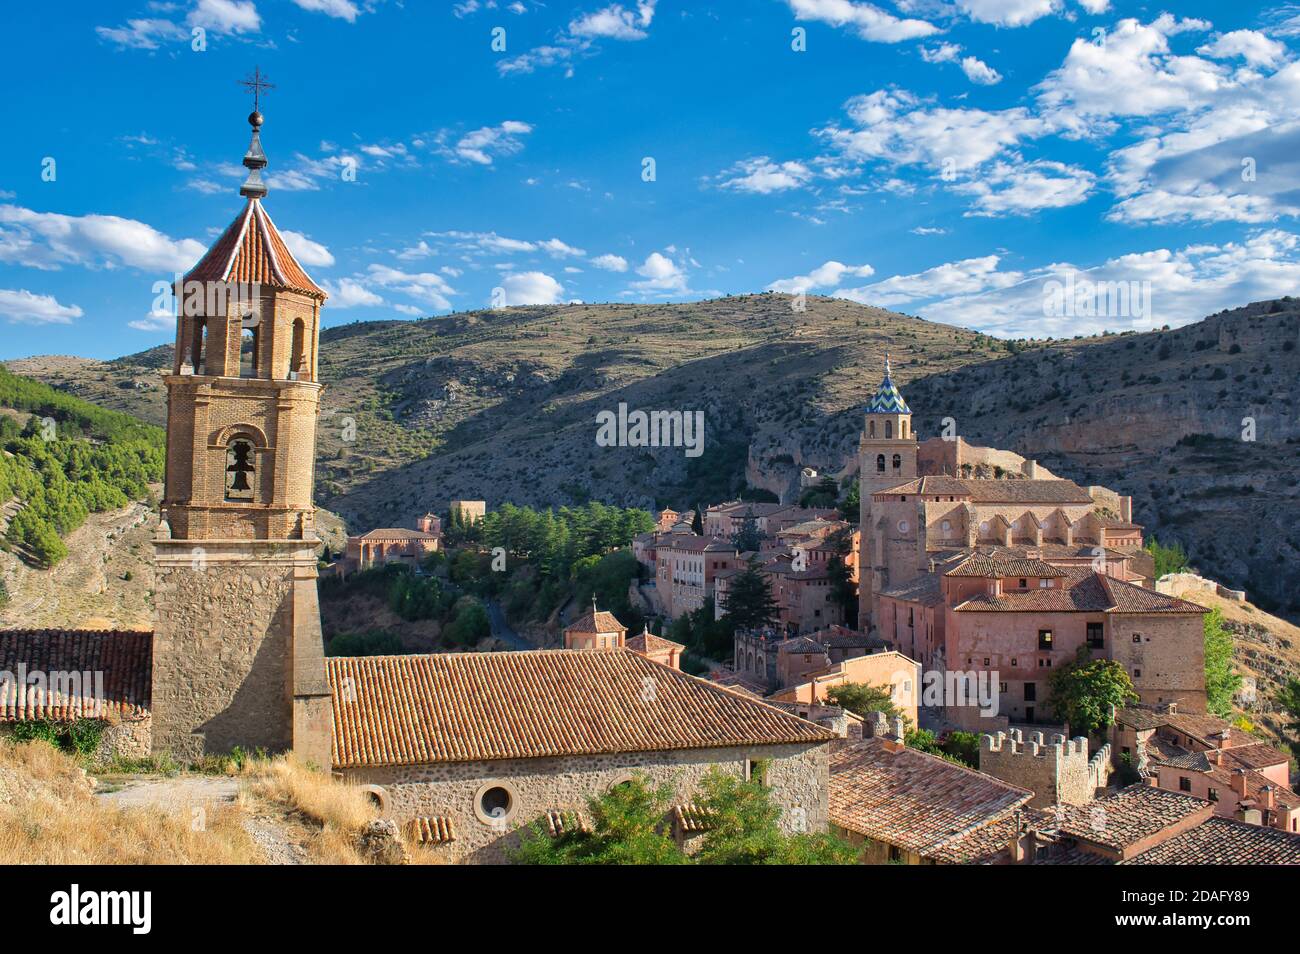 Clocher pendu de la paroisse Santa Maria y Santiago dans la belle ville médiévale d'Albarracin, Teruel. Cathédrale de Salvador en arrière-plan Banque D'Images